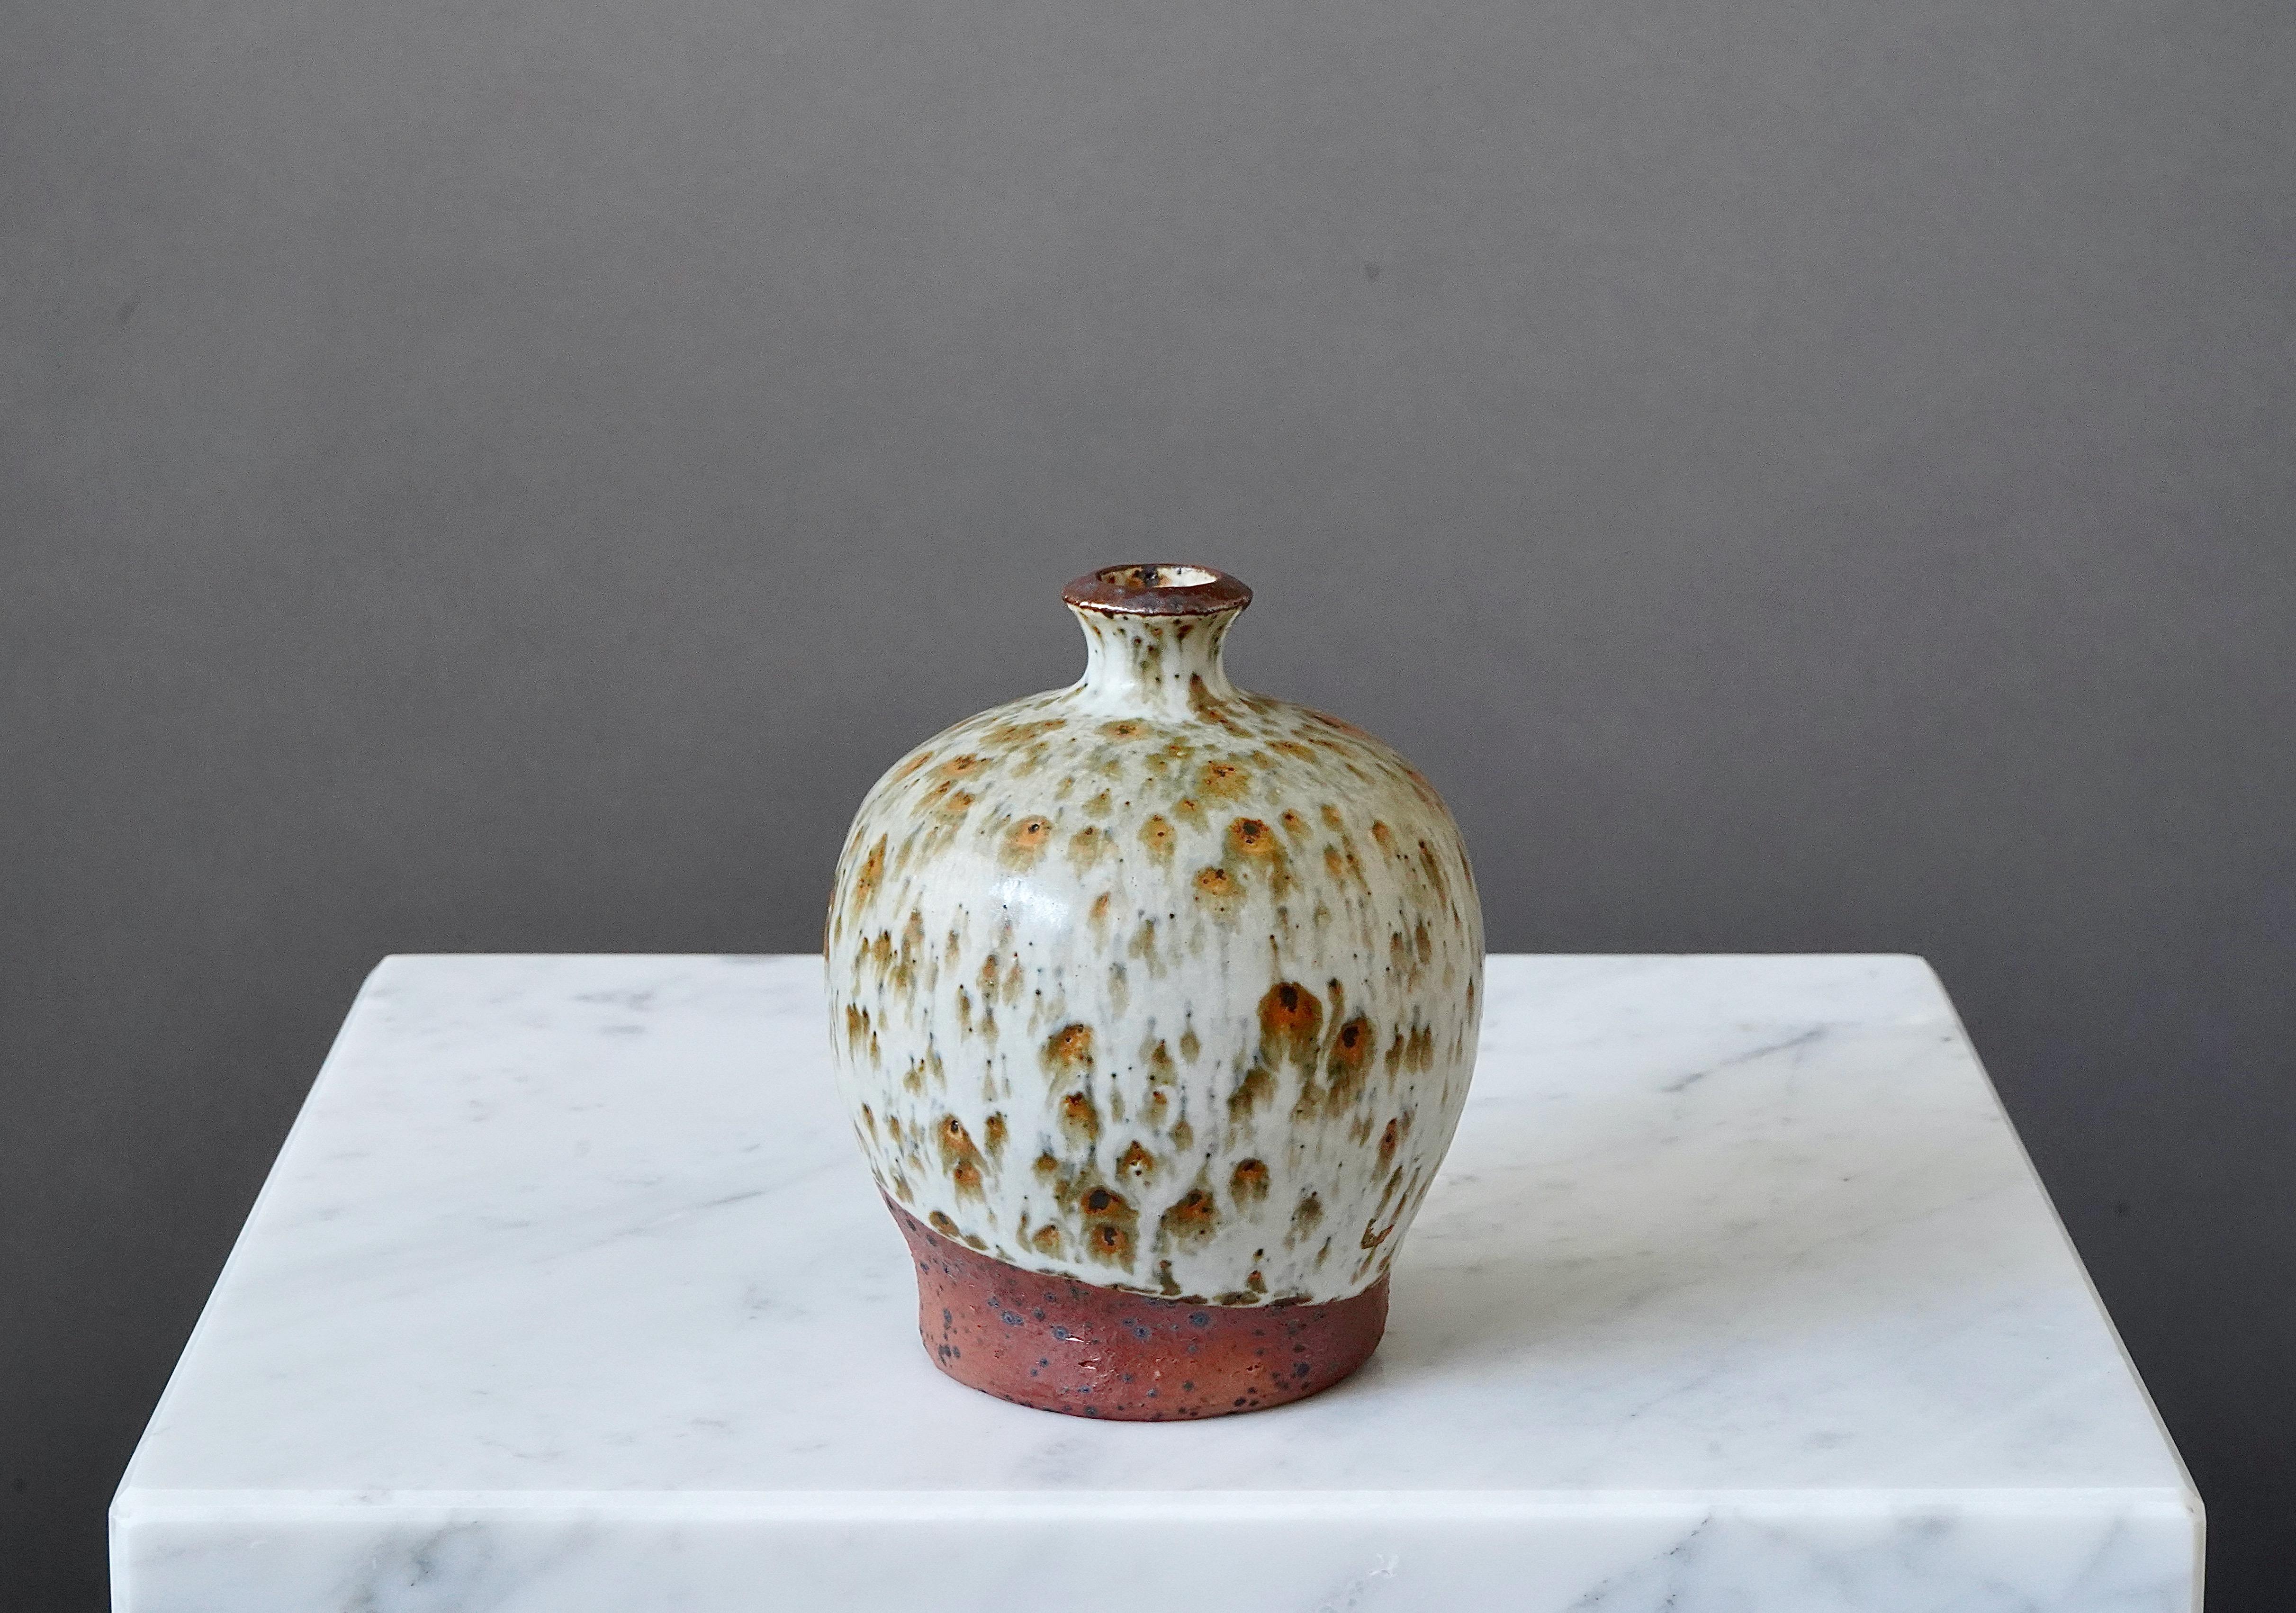 Eine schöne und einzigartige Vase aus Steingut mit erstaunlicher Glasur. 
Hergestellt von Rolf Palm, im Studio des Künstlers, Mölle, Schweden, 1981.

Ausgezeichneter Zustand. Eingeschnitten 'Palm / Mölle / H0' und markiert '176'.

Rolf Palm